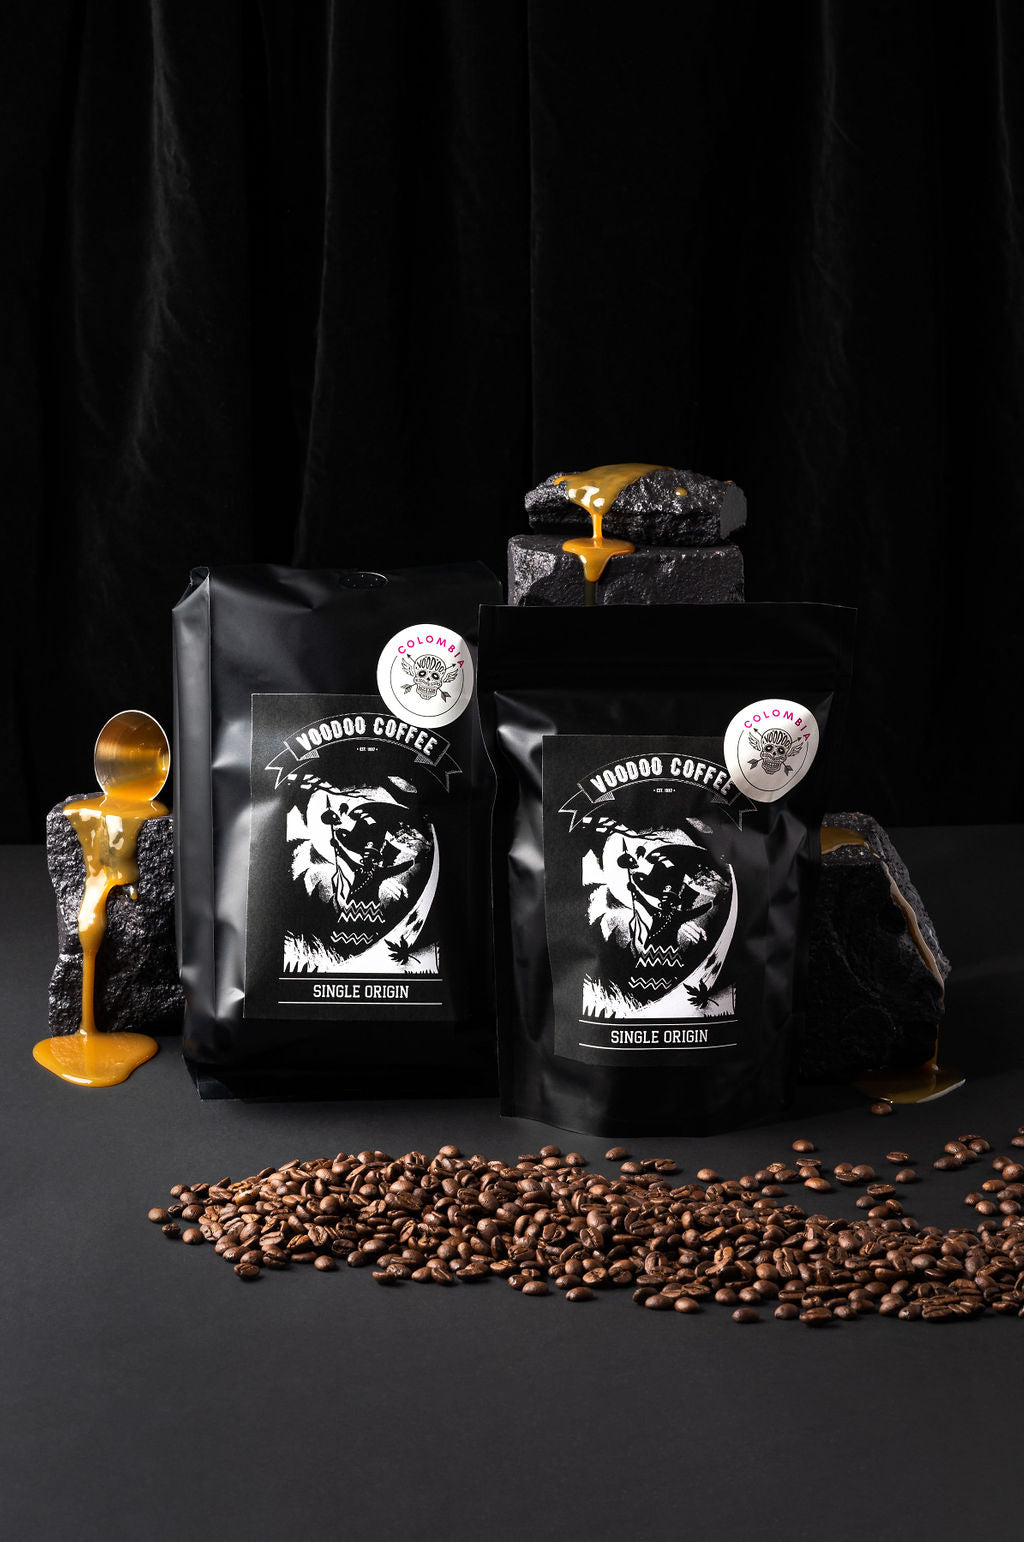 Colombia Single Origin Coffee Beans Plunger Espresso